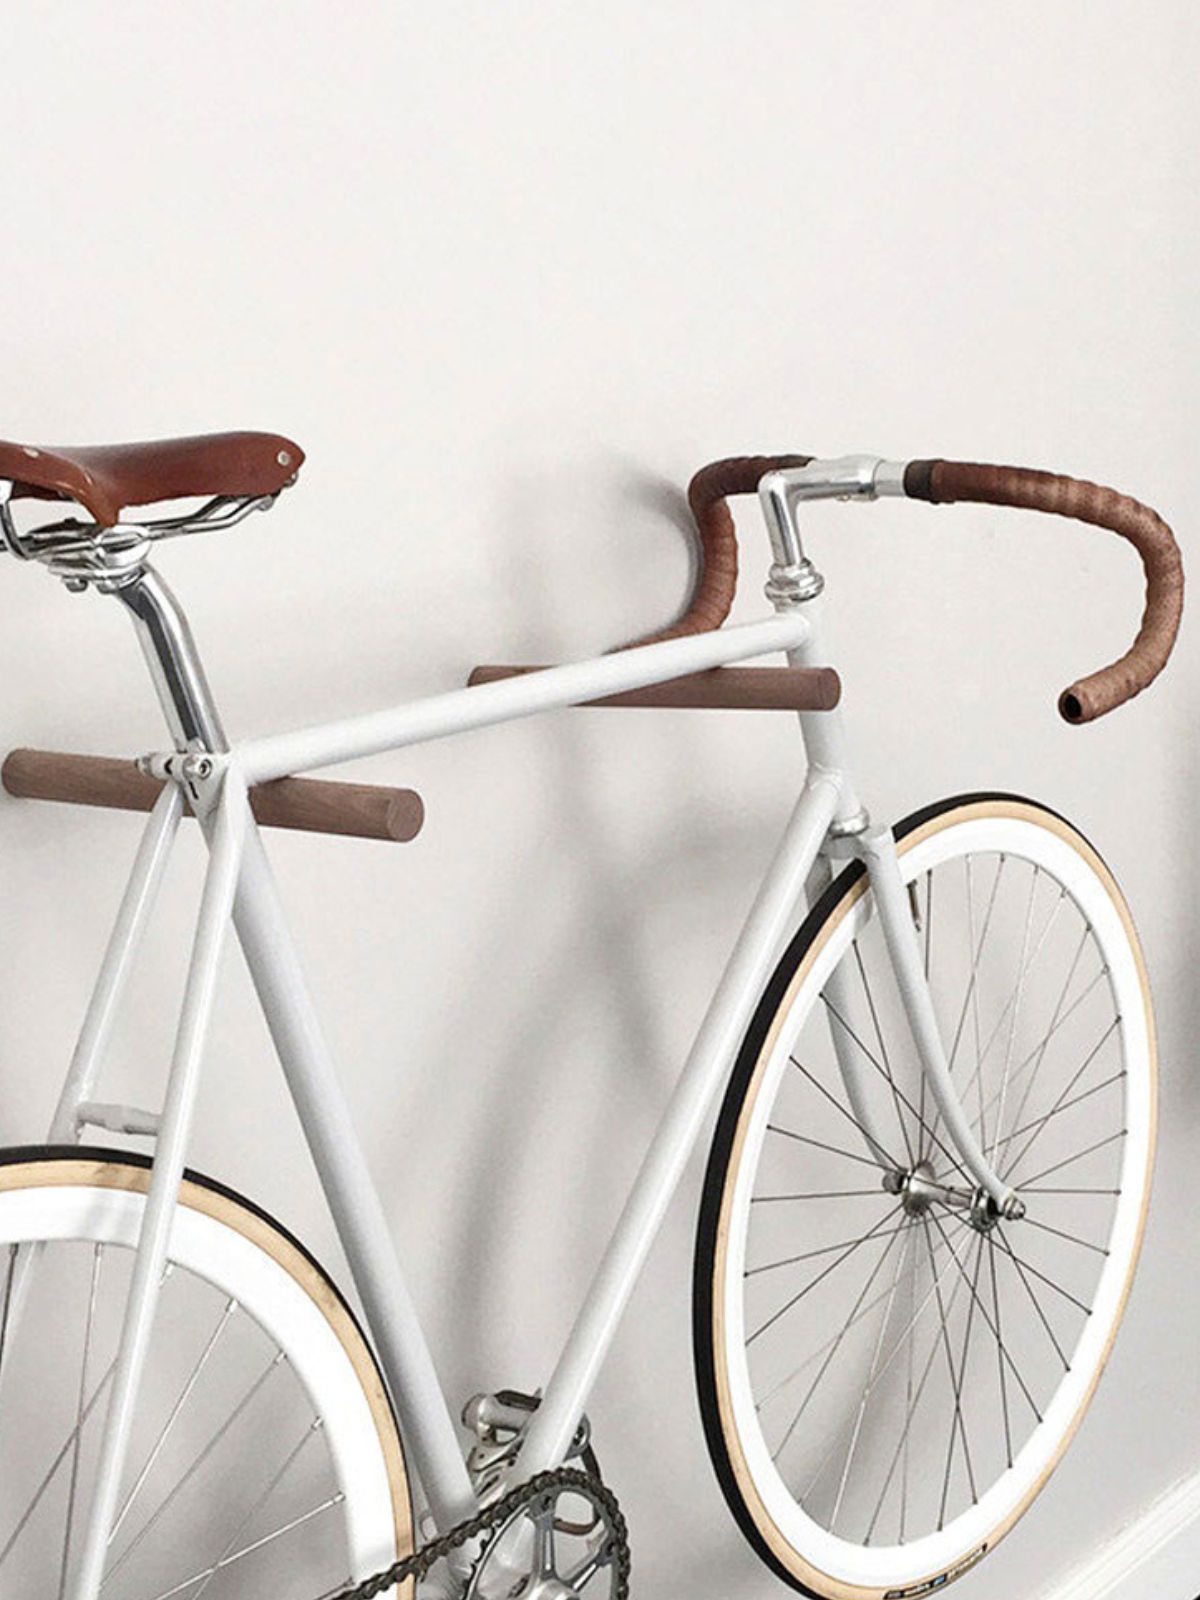 Fahrrad hängt auf zwei Sticks aus Holz die als Wandhalterung dienen